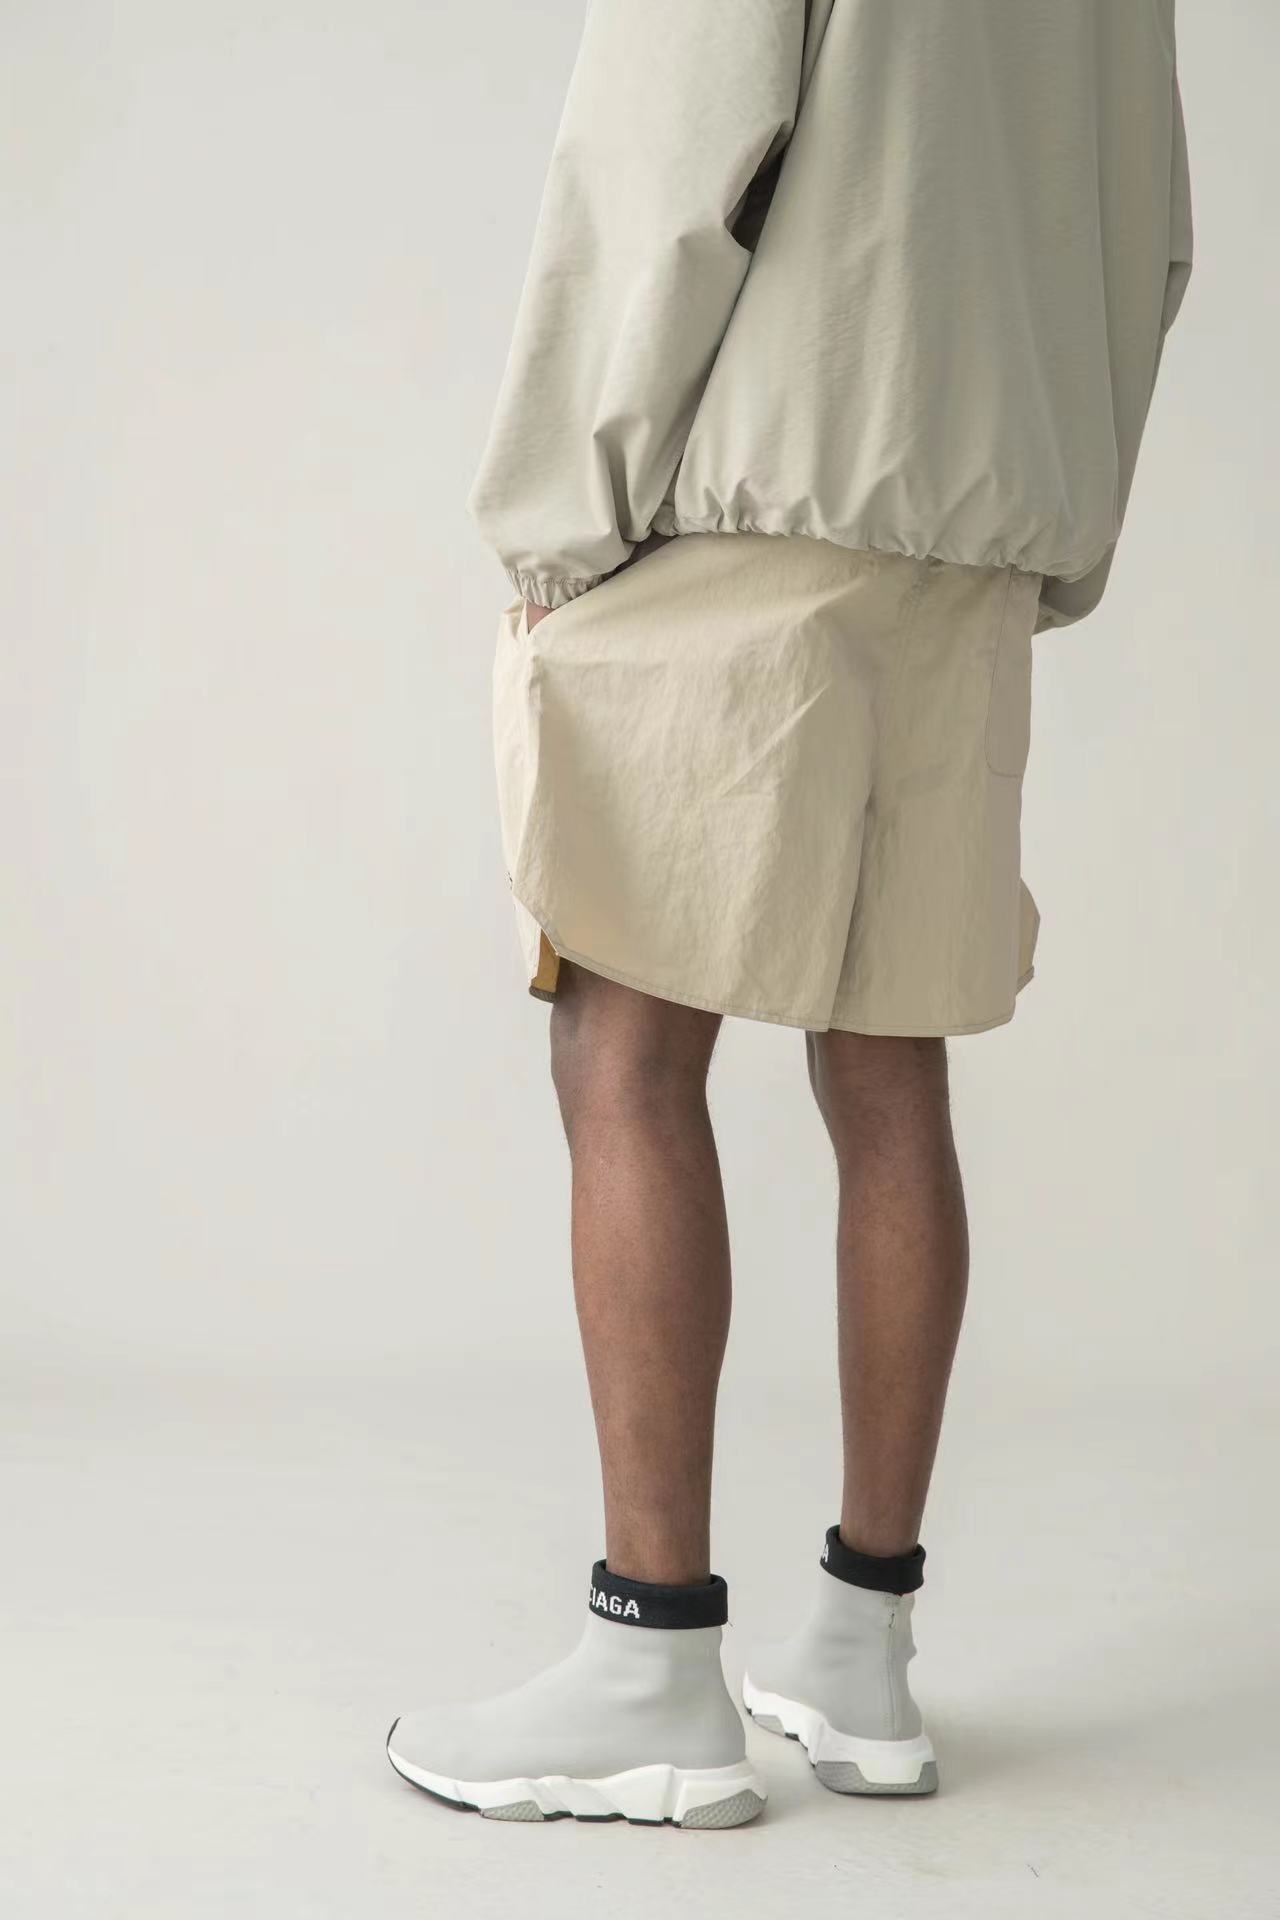 Shorts réfléchissants pour hommes Designer réflexifère à emport tissé shorts imprimés en nylon Capris Sports Pantal